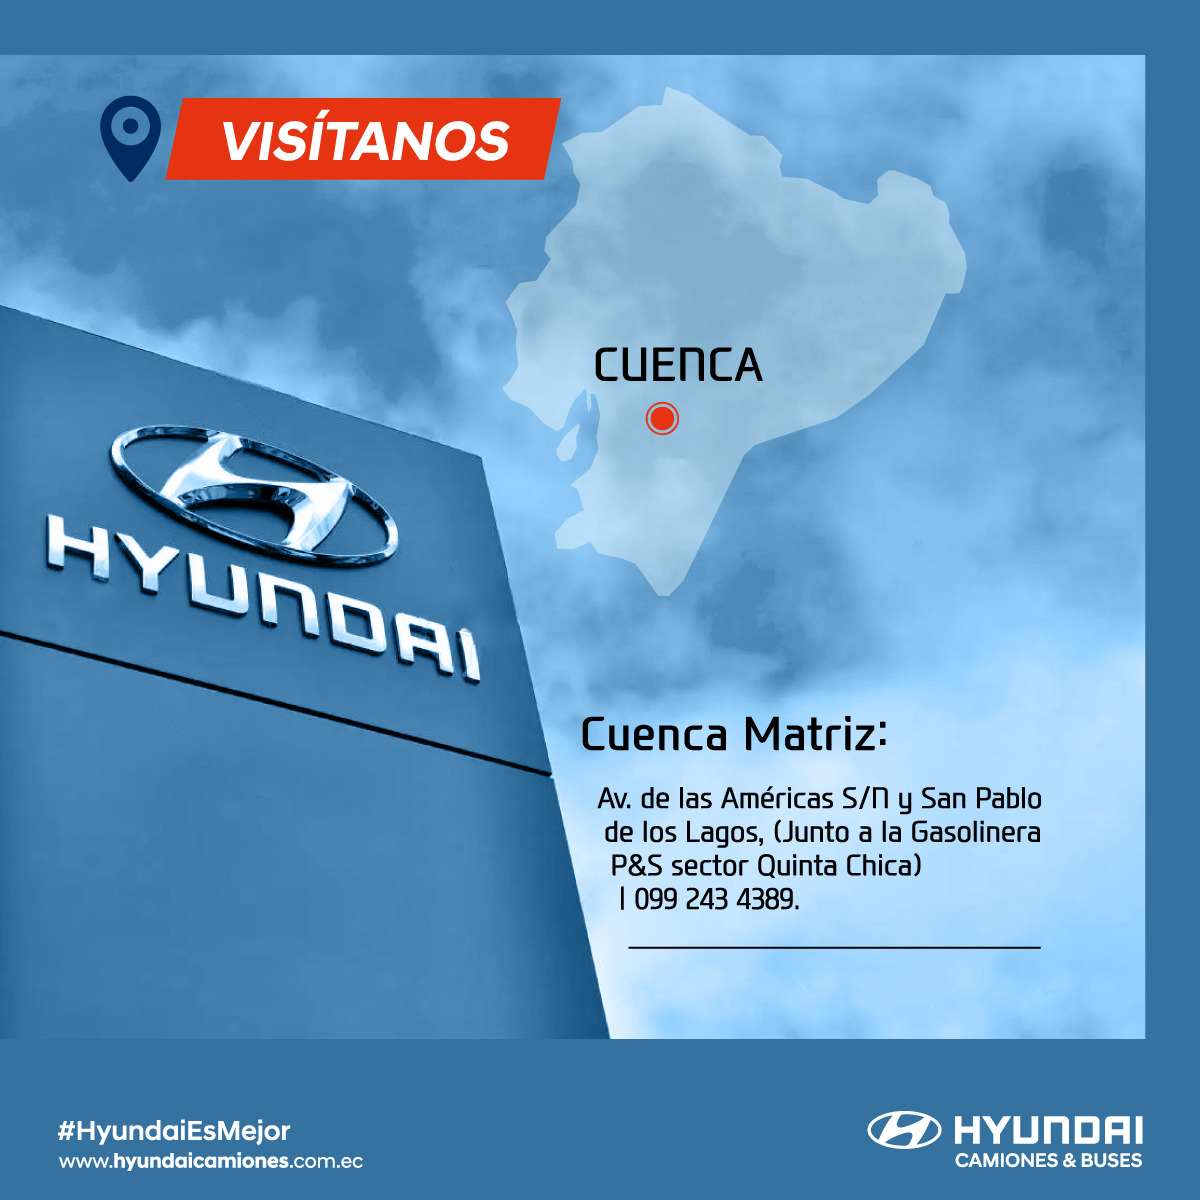 Visitanos Hyundai Camiones y Buses Ecuador - Cuenca